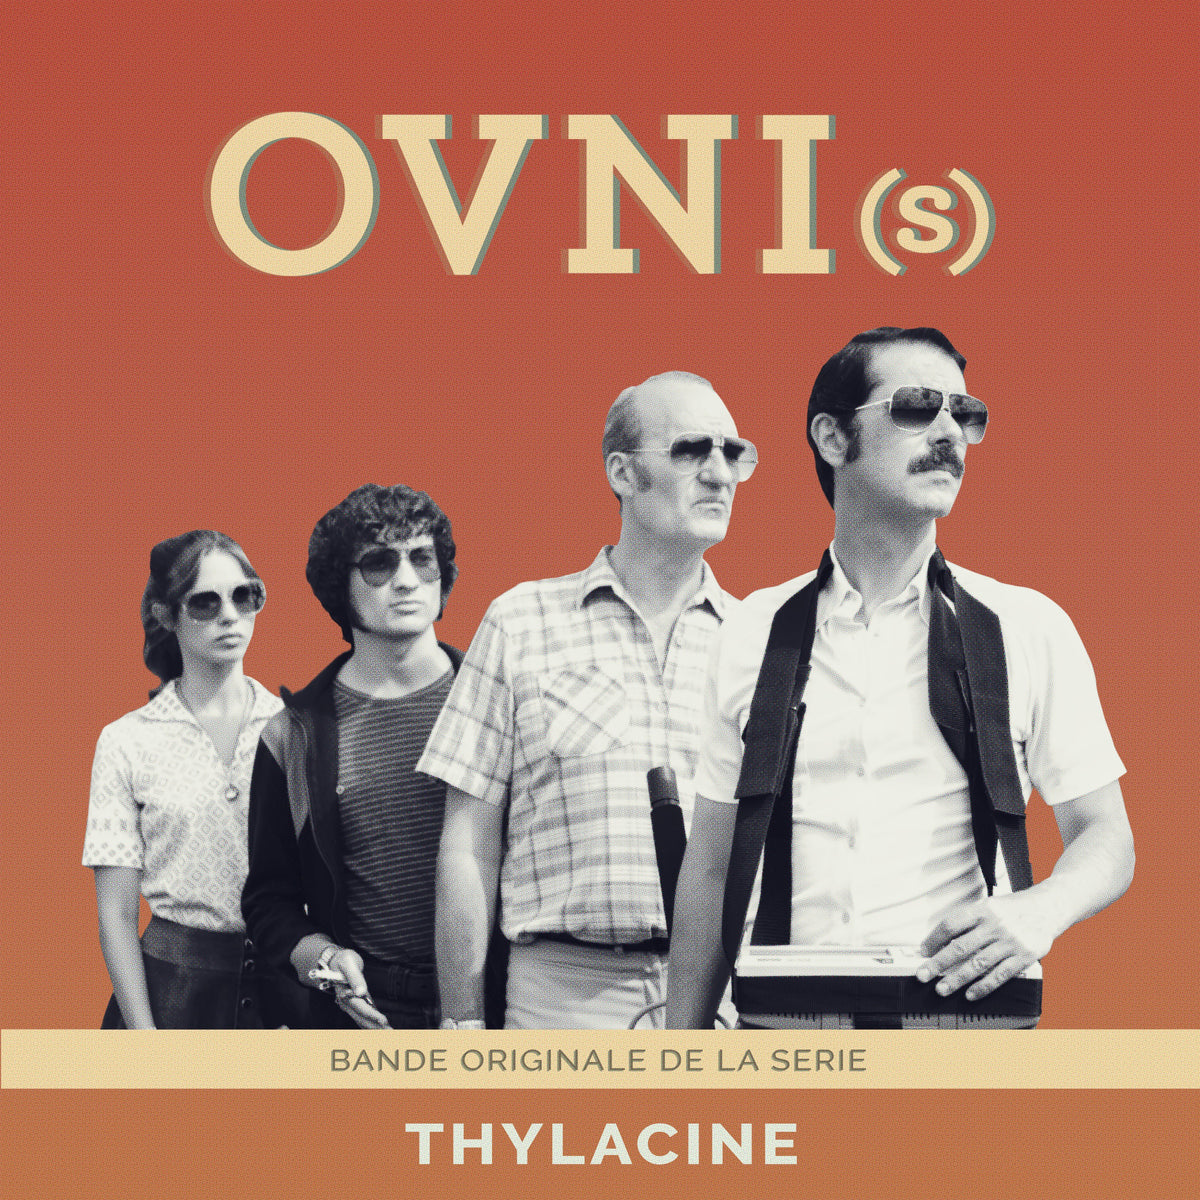 OVNI(s) - Original Soundtrack